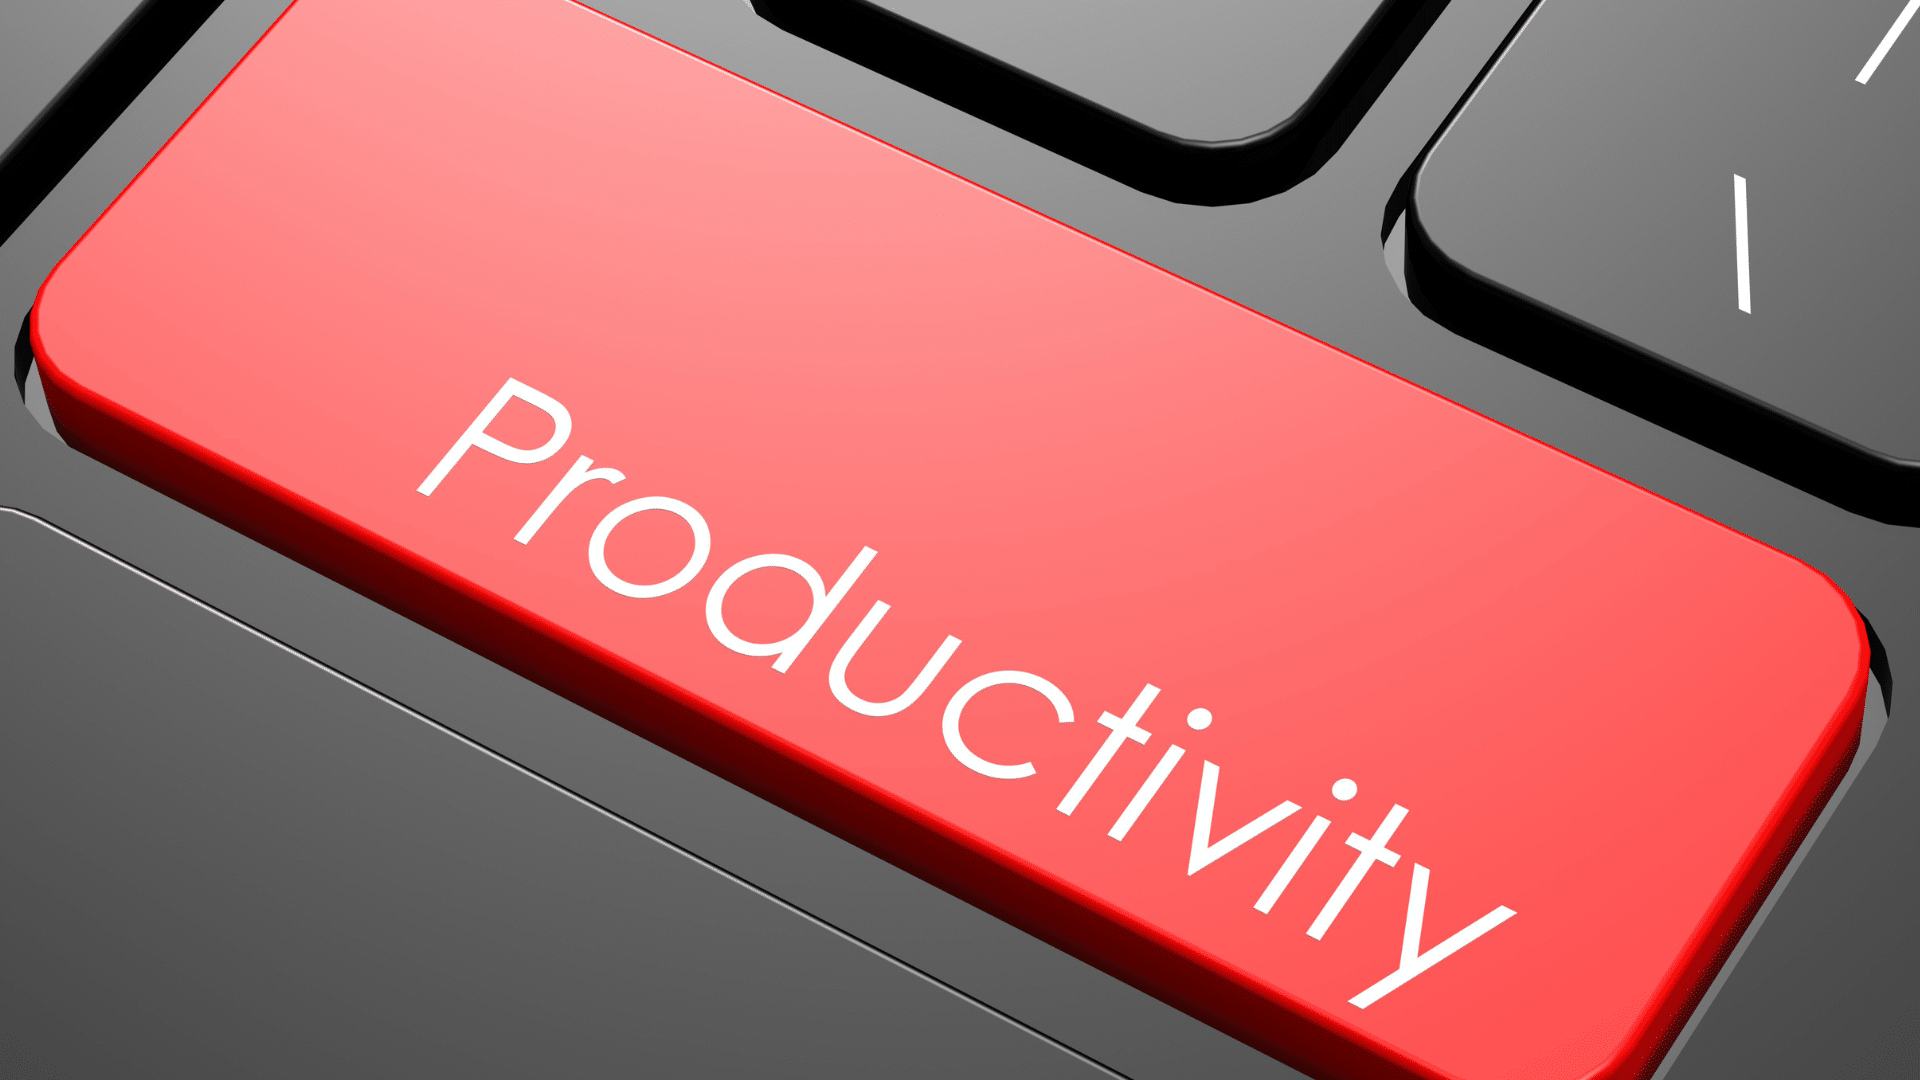 Améliorez votre productivité avec Windows 10 Pro.